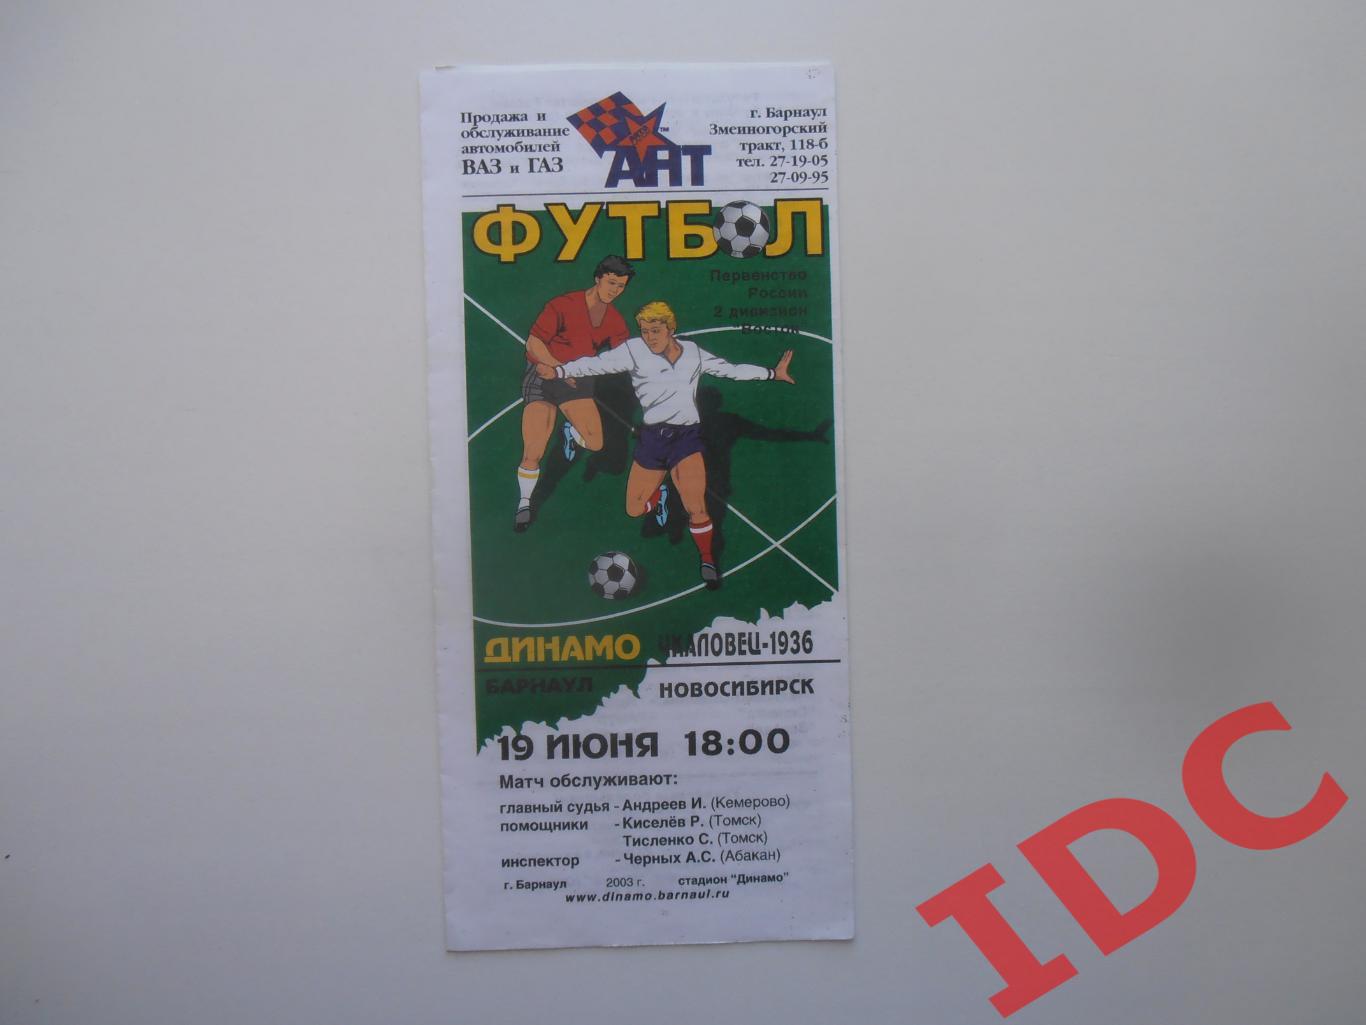 Динамо Барнаул-Чкаловец Новосибирск 19 июня 2003